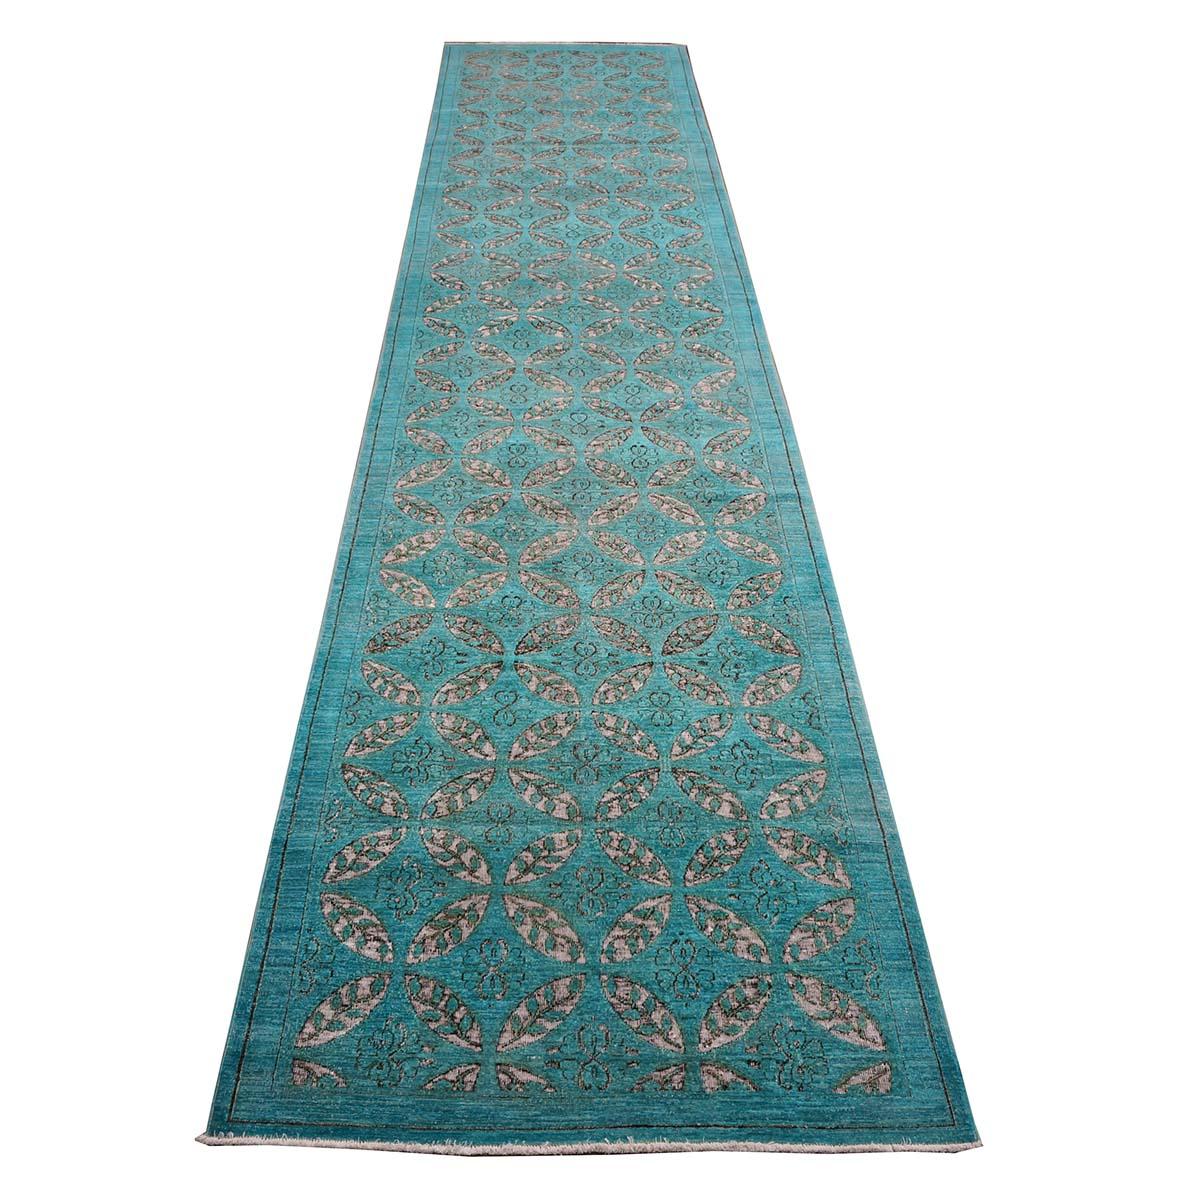 Ashly Fine Rugs präsentiert einen neuen modernen afghanischen Teppich im Used-Look. Diese Teppiche wurden überfärbt und mit einem individuellen Design versehen, um ihnen einen antiken, aber dennoch modernen Look zu verleihen. Dieses Stück wurde mit